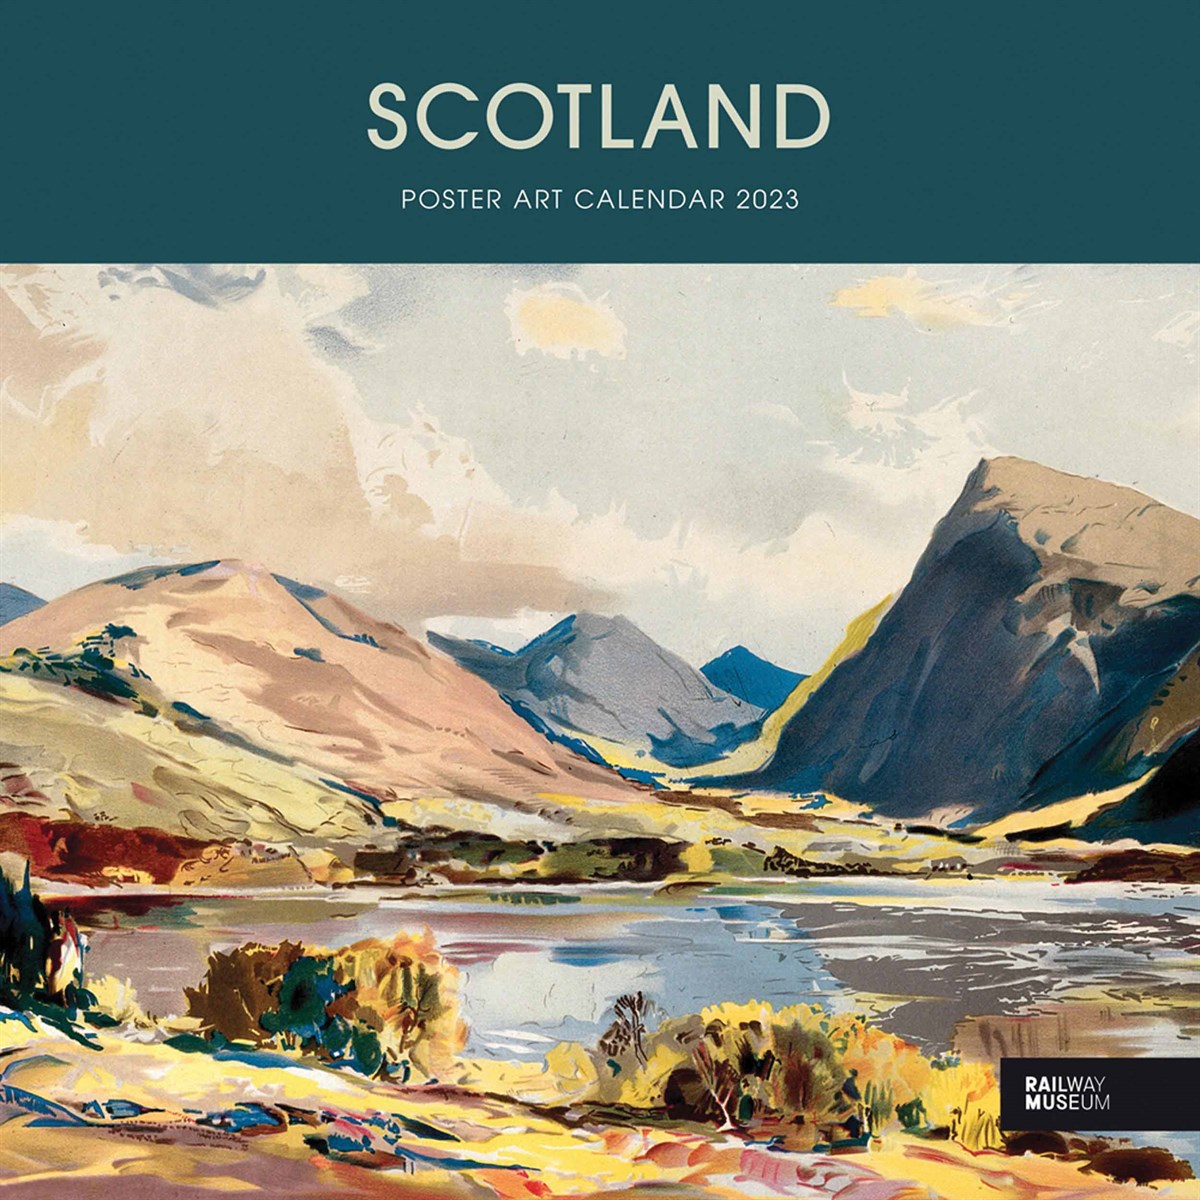 National Railway Museum, Scotland Poster Art 2023 Calendars